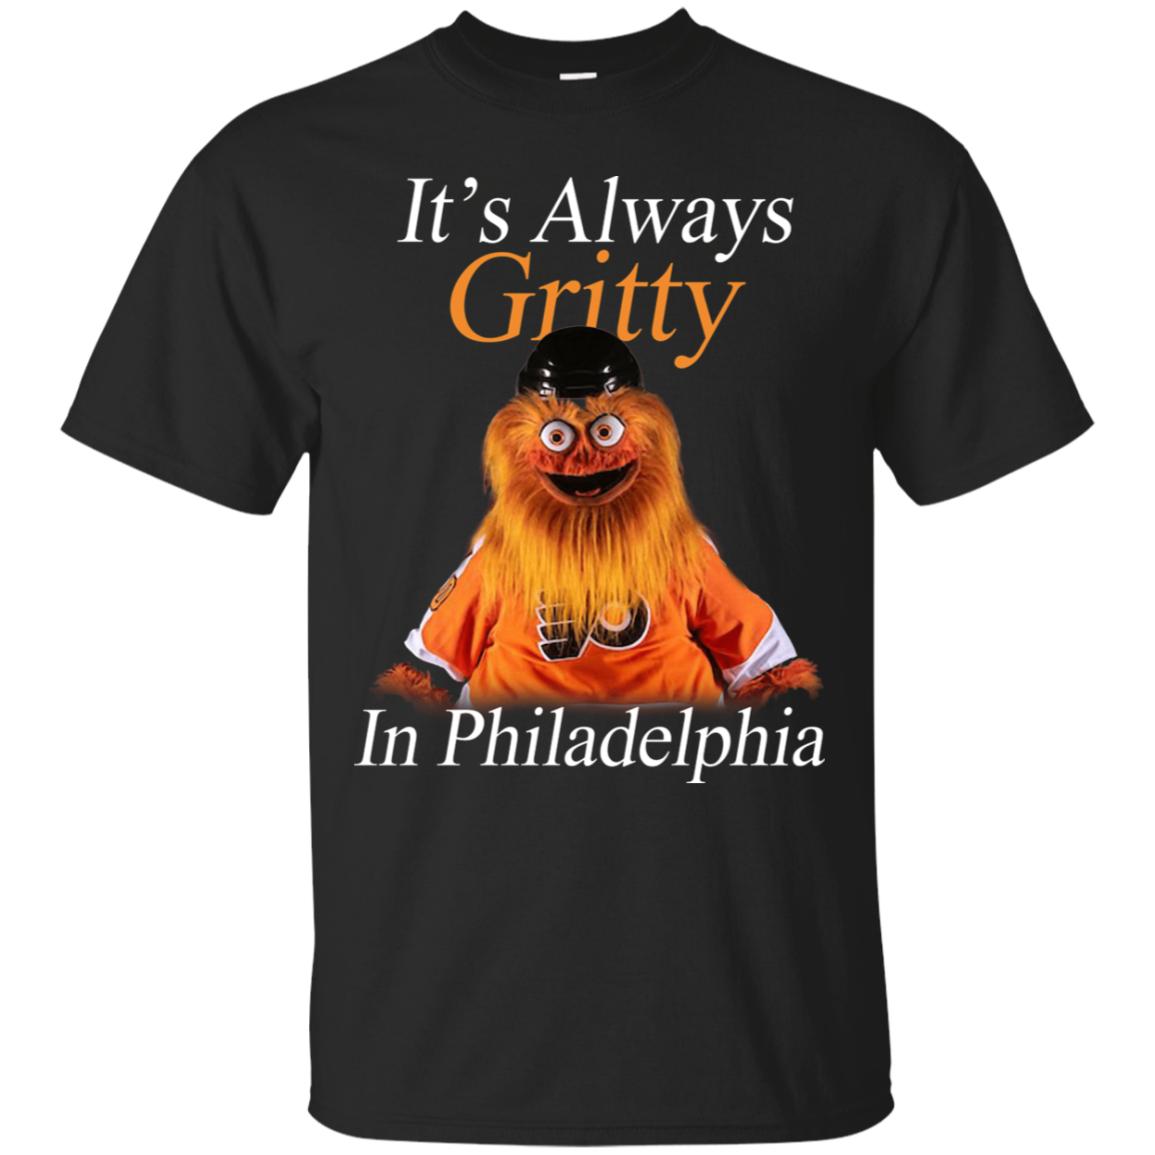 It’s Always Gritty In Philadelphia T-Shirt